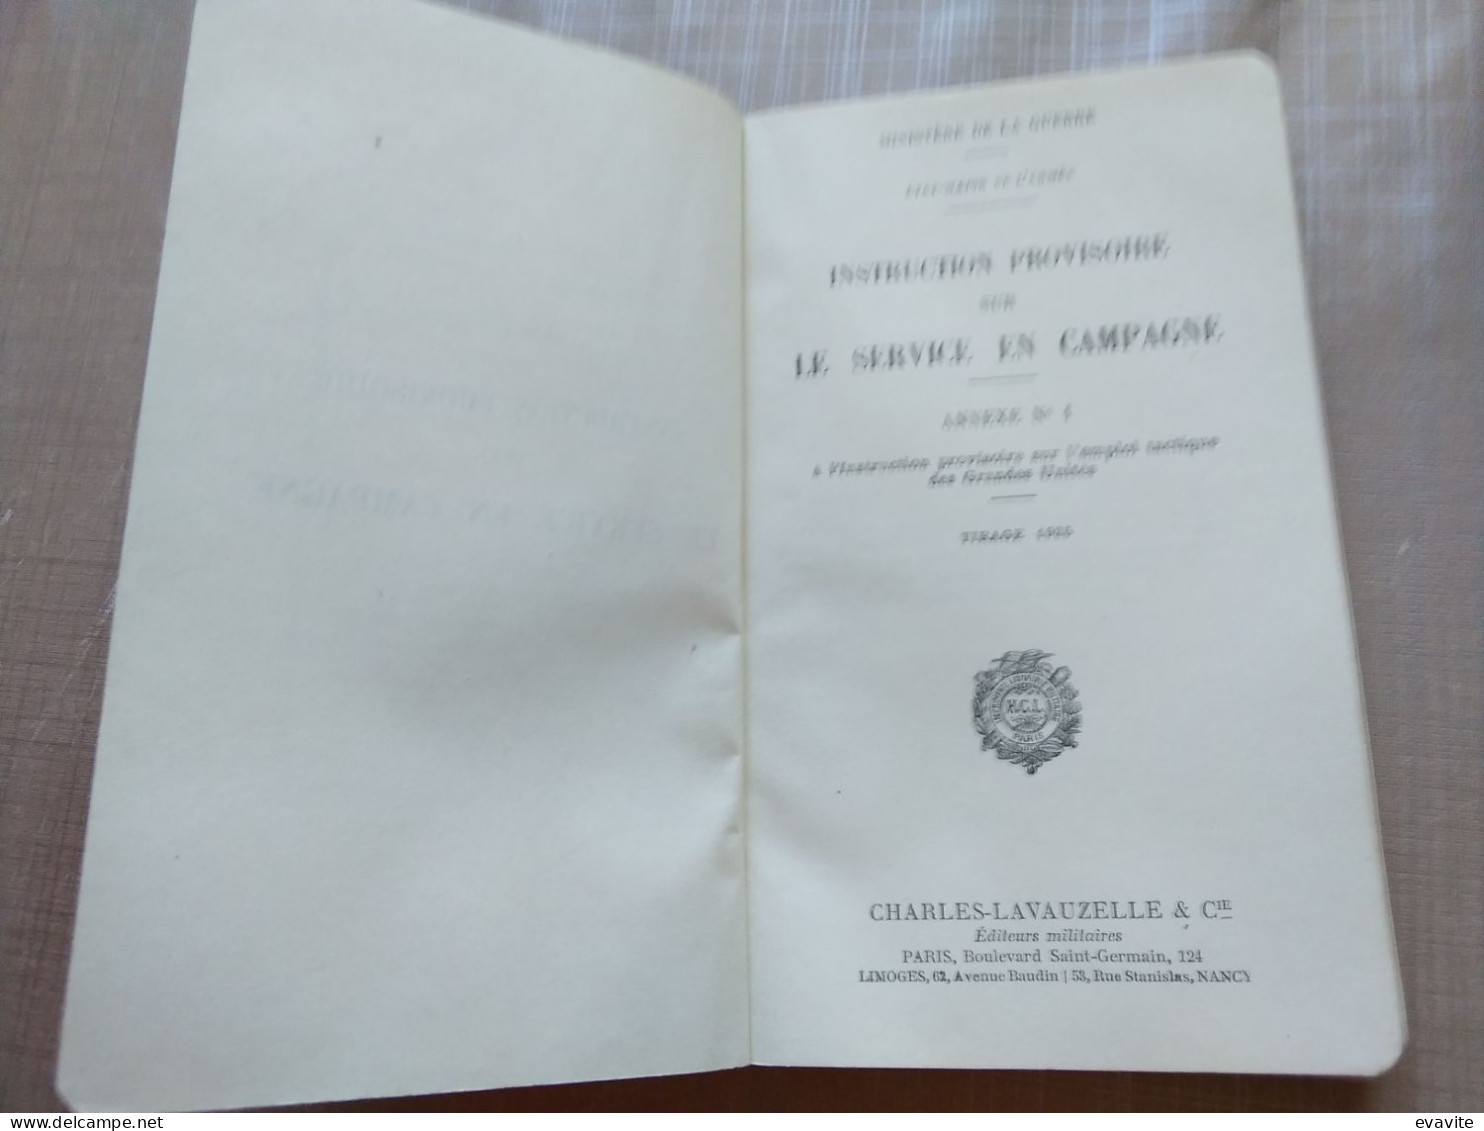 1924 - Ministère De La Guerre - Instruction Provisoire Sur LE SERVICE EN CAMPAGNE Annexe N° 1 - French